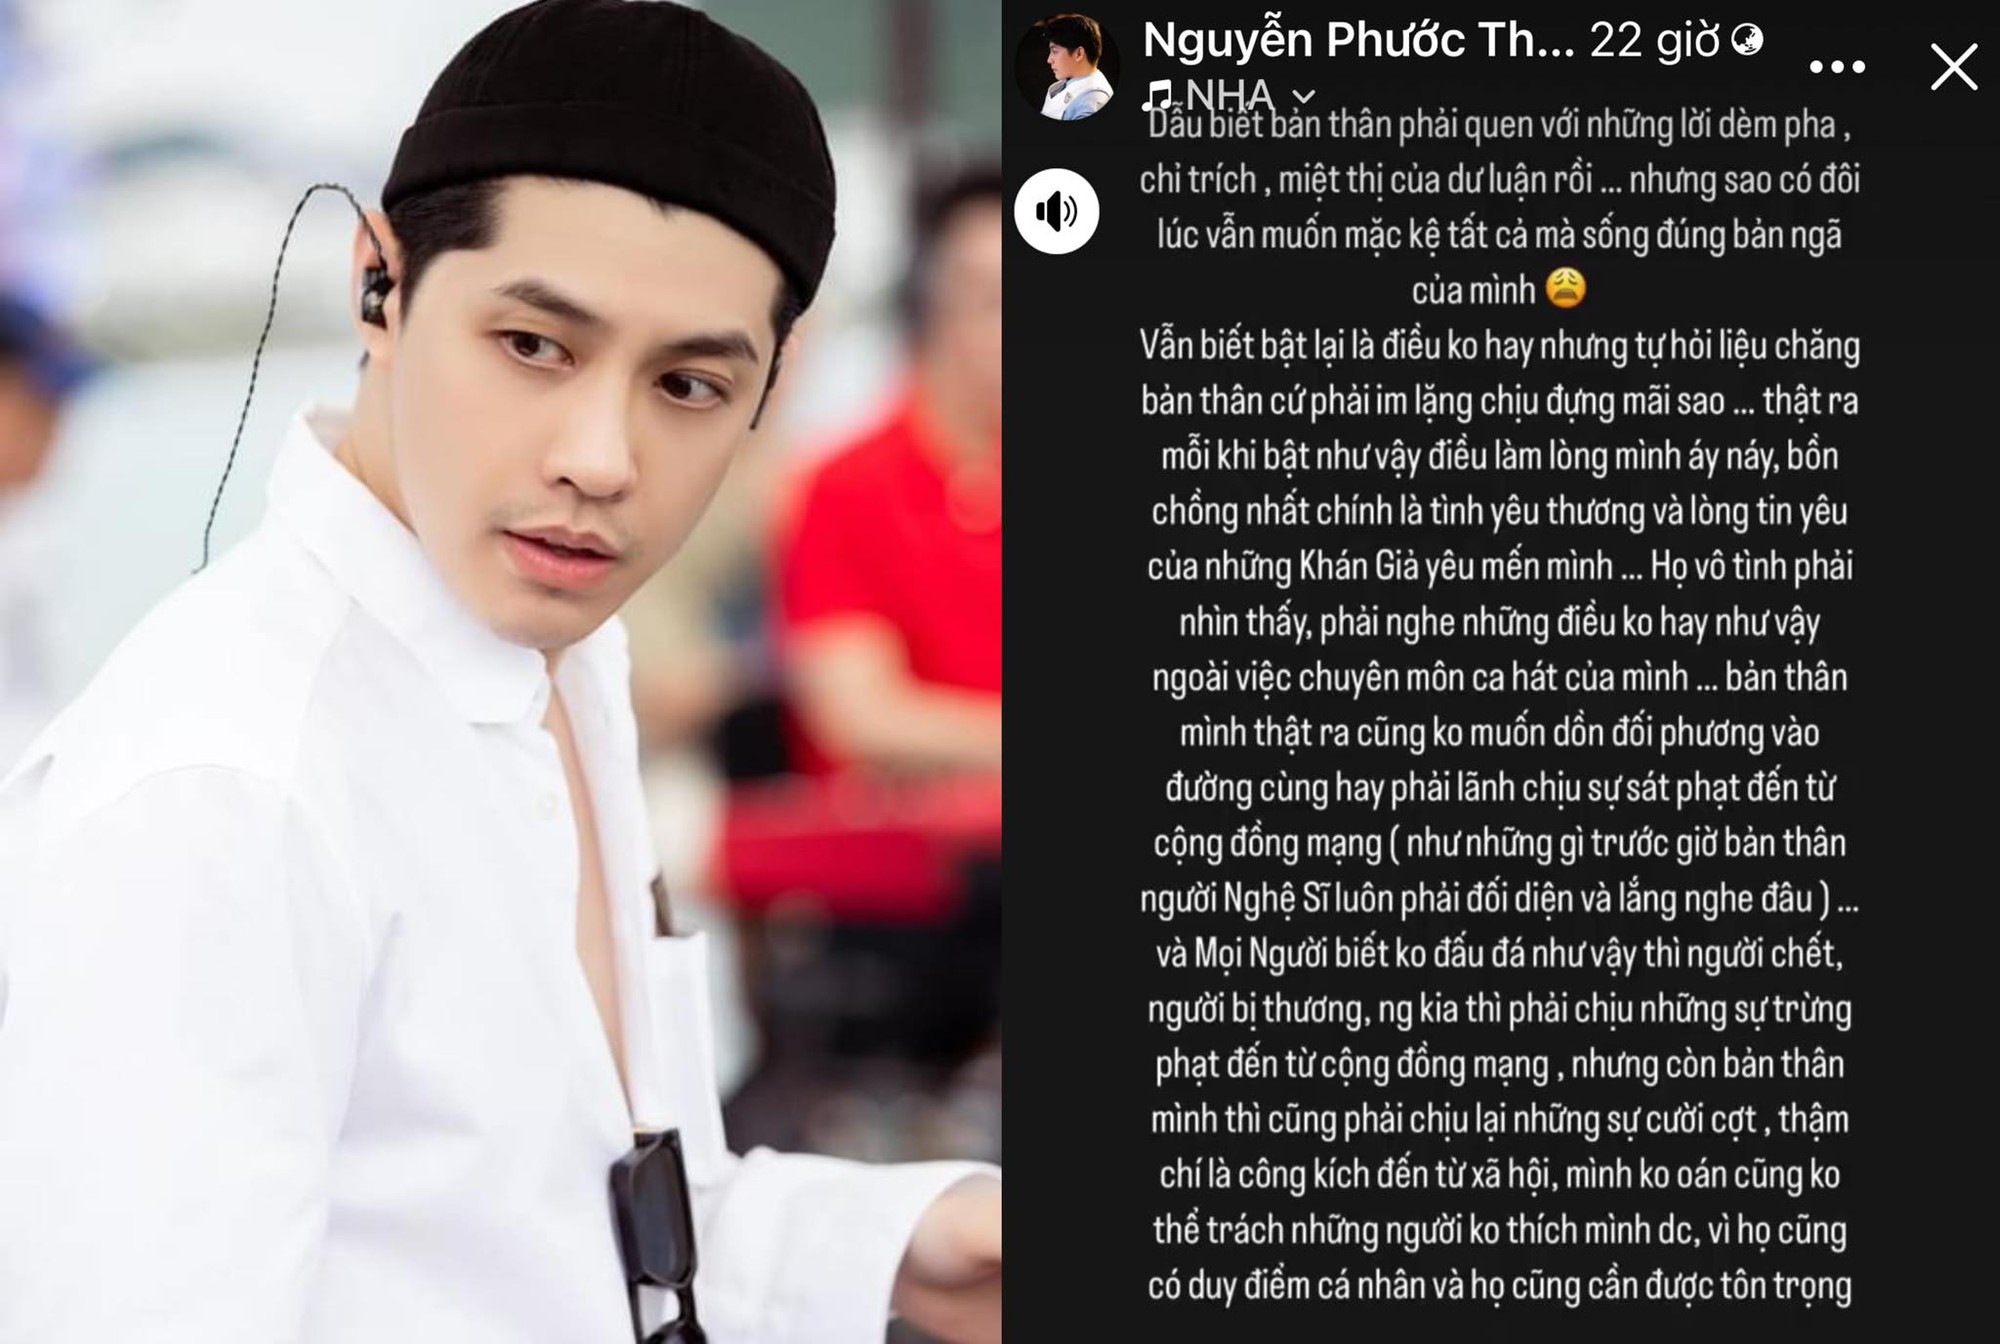 Ca sĩ Noo Phước Thịnh lên tiếng xin lỗi vì bình luận khiếm nhã